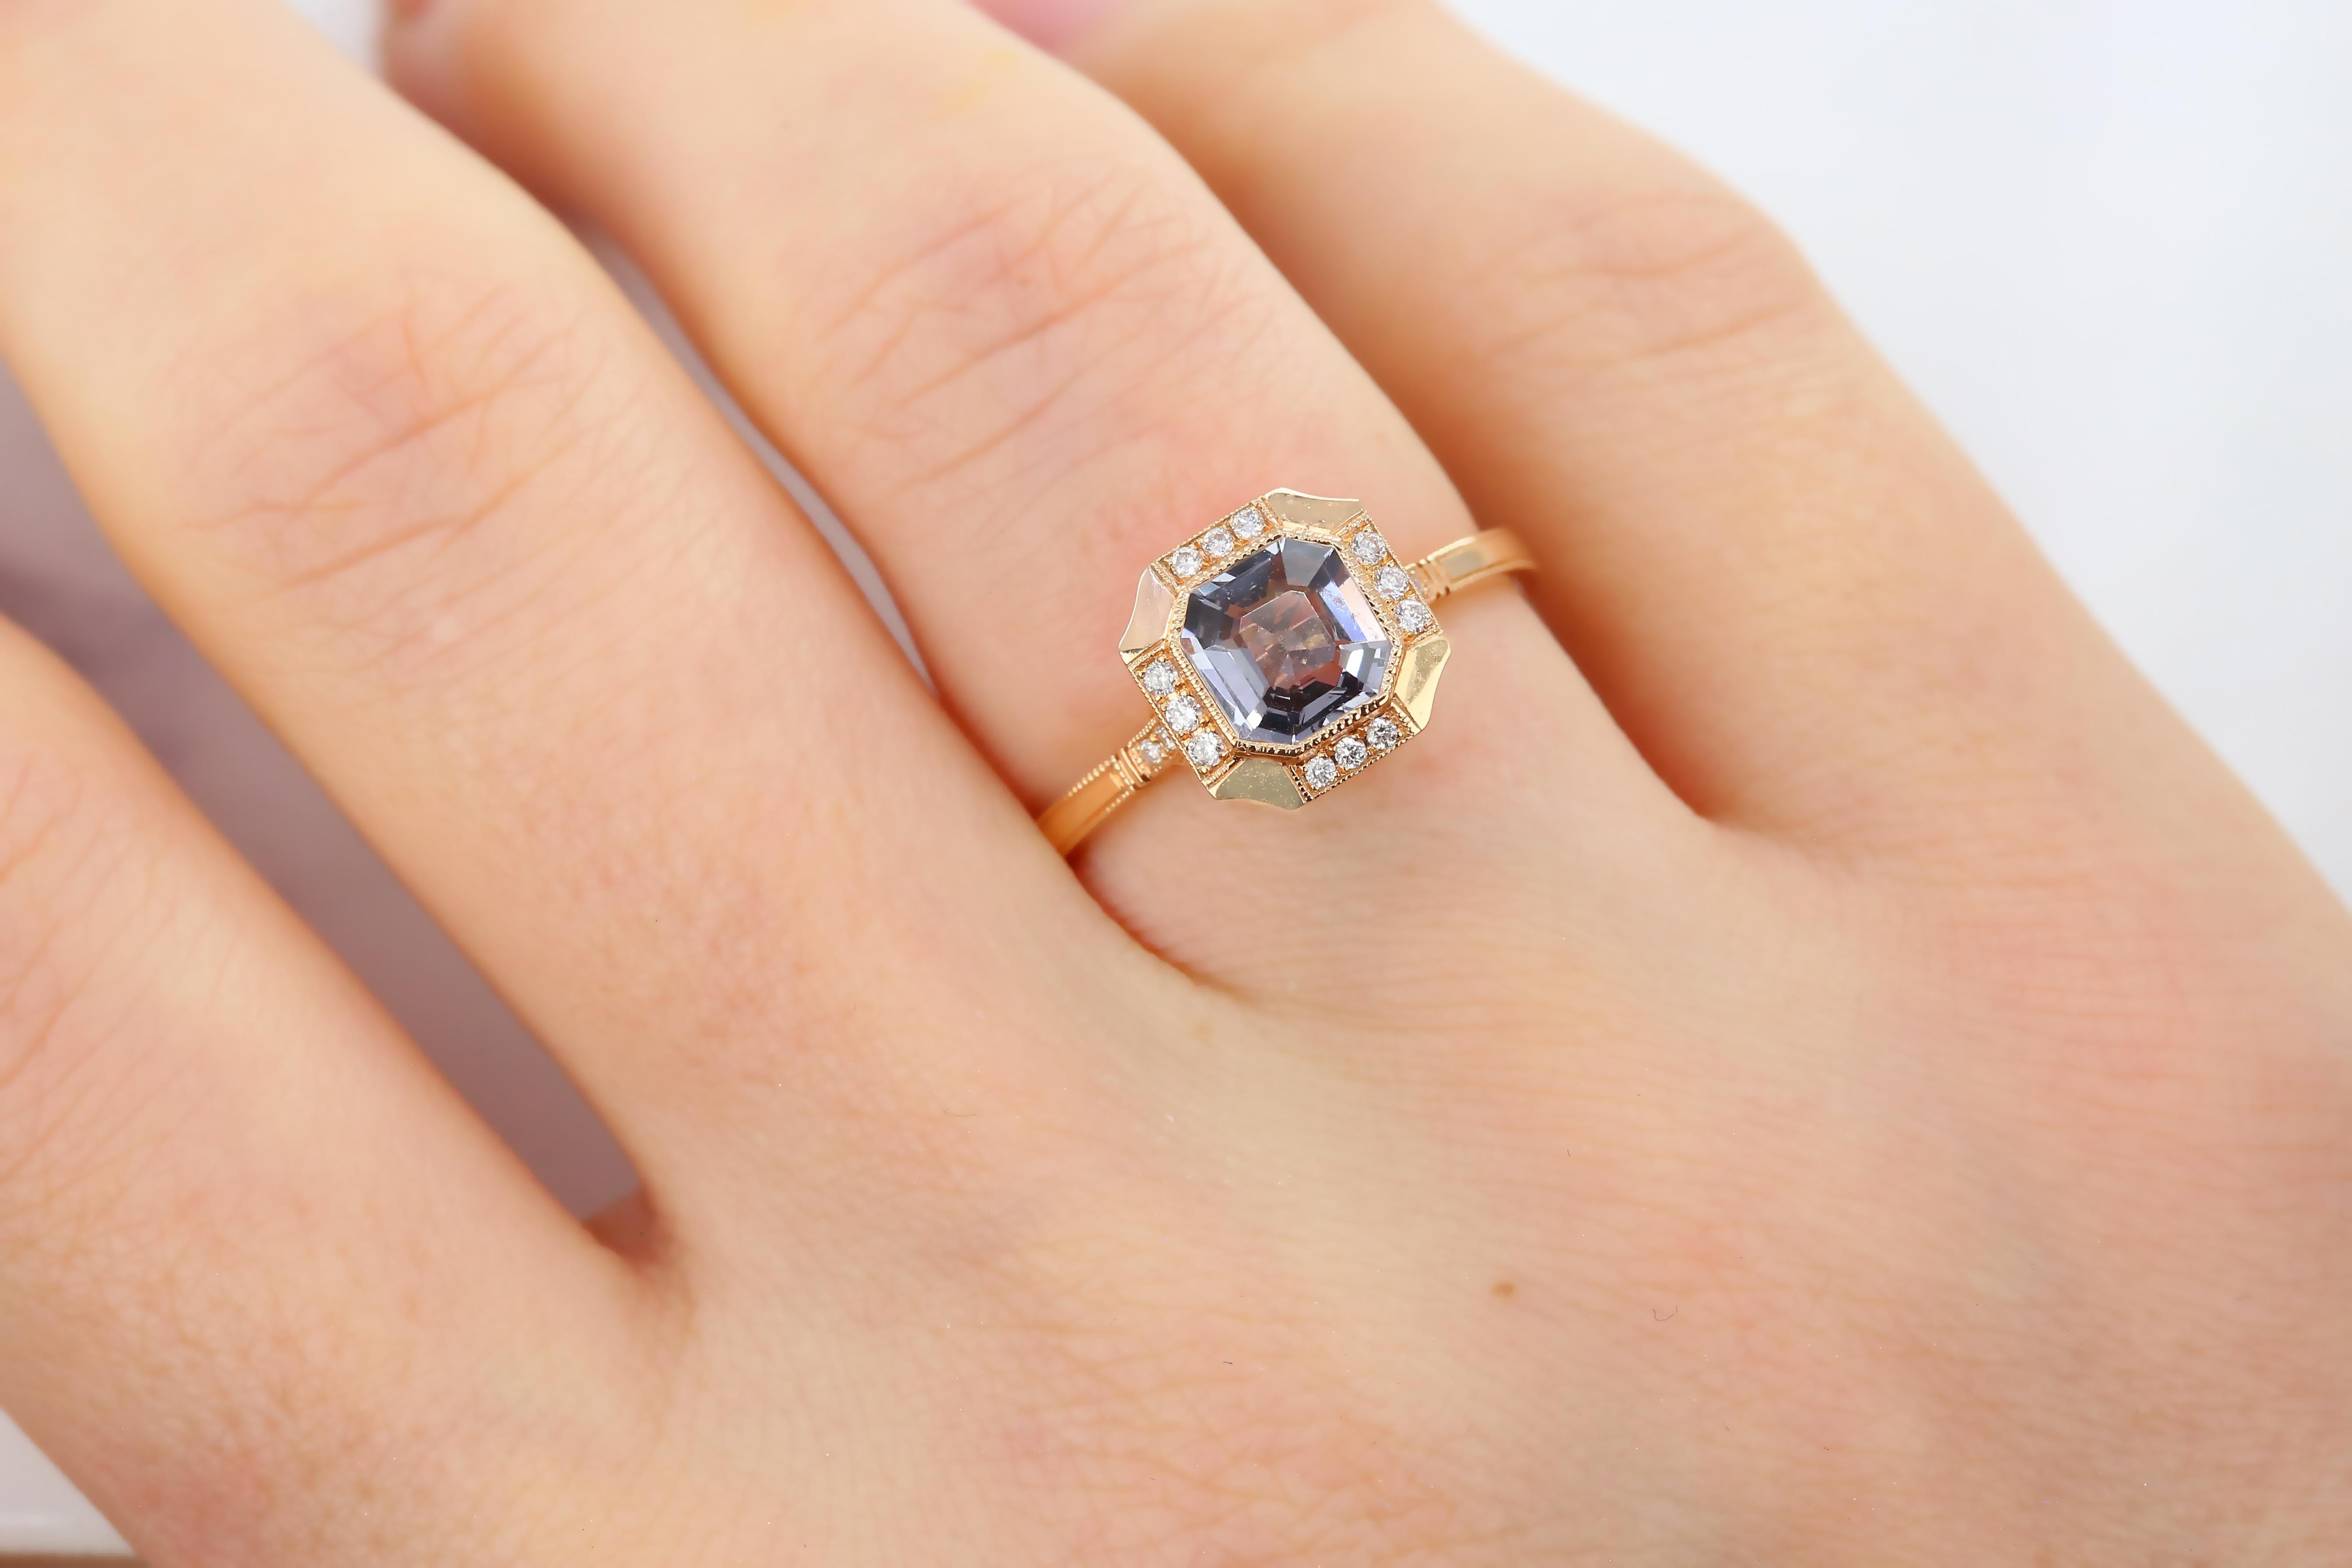 Vintage Style 0.99 Ct Spinel with Diamond Engagement Ring, 14K Solitaire Ring, créé par les mains de l'anneau aux formes de la pierre.

J'ai utilisé un spinelle brillant de style vintage pour les amoureux de la bague de fiançailles de style vintage.